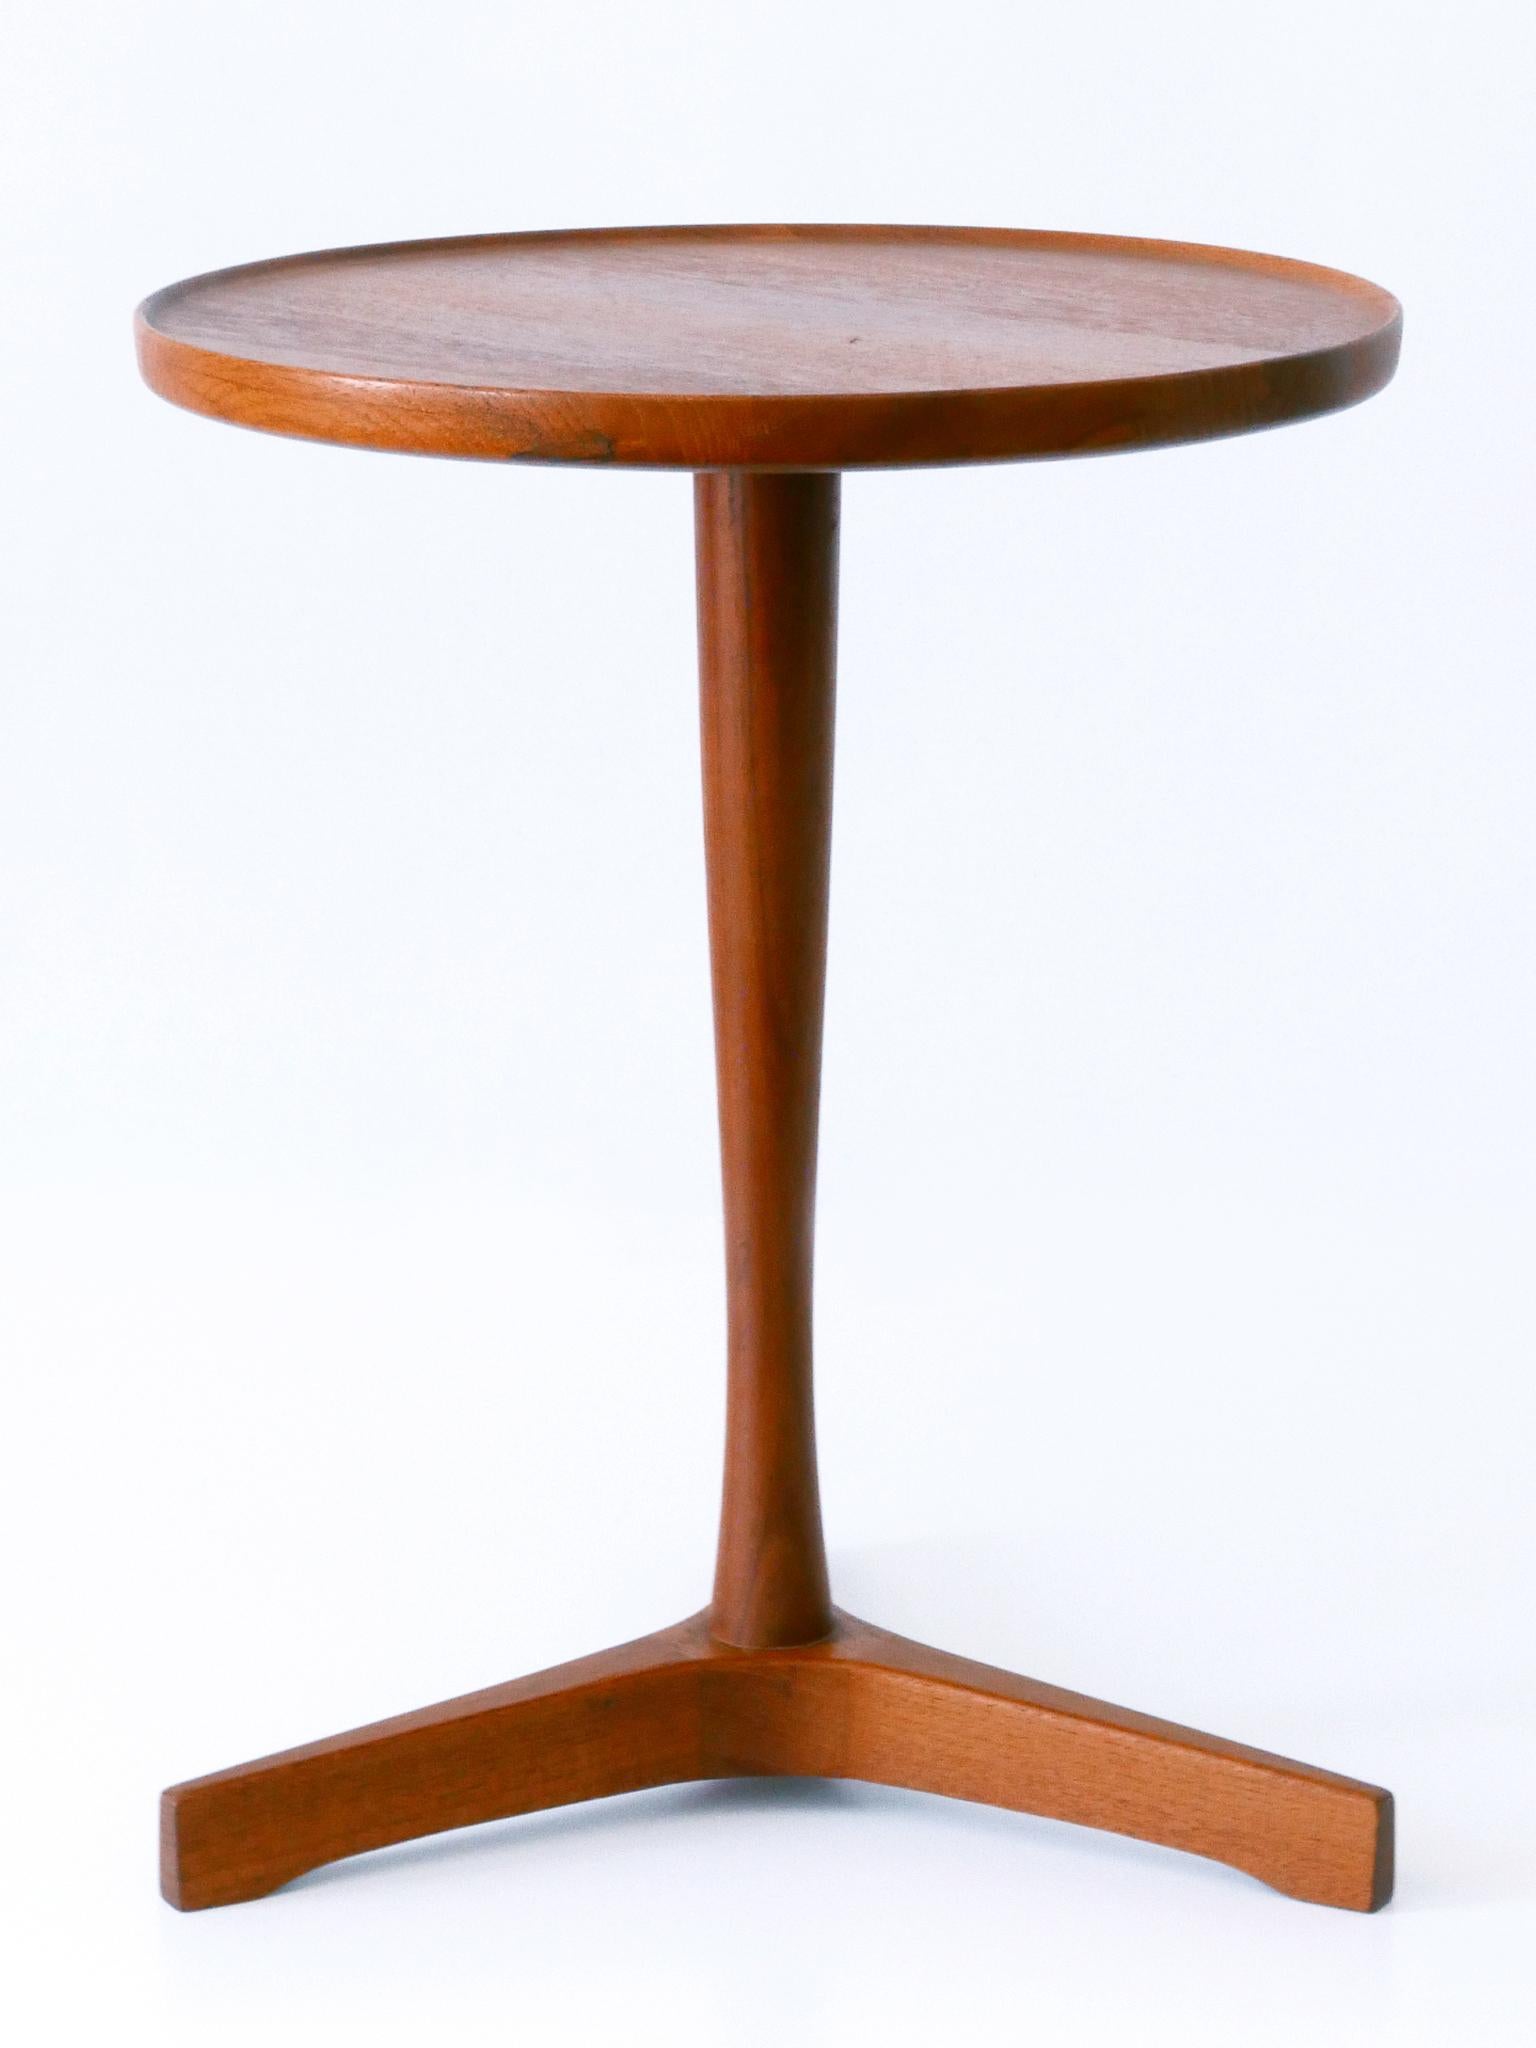 Elegant Mid-Century Modern Teak Side Table by Hans C. Andersen for Artek 1960s For Sale 1